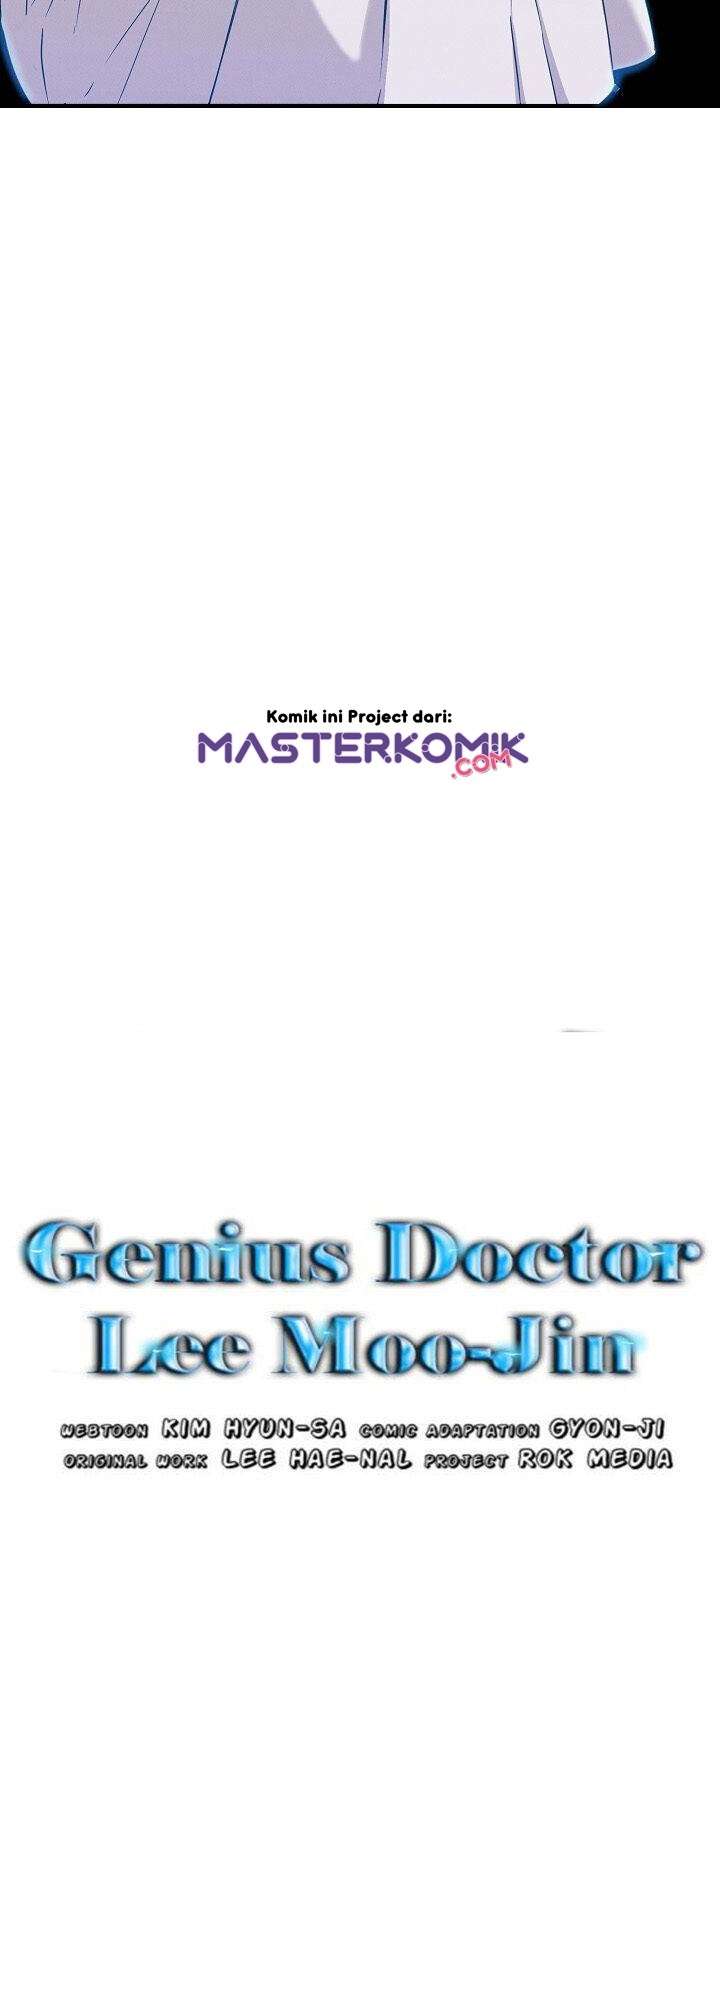 Genius Doctor Lee Moo-jin Chapter 9